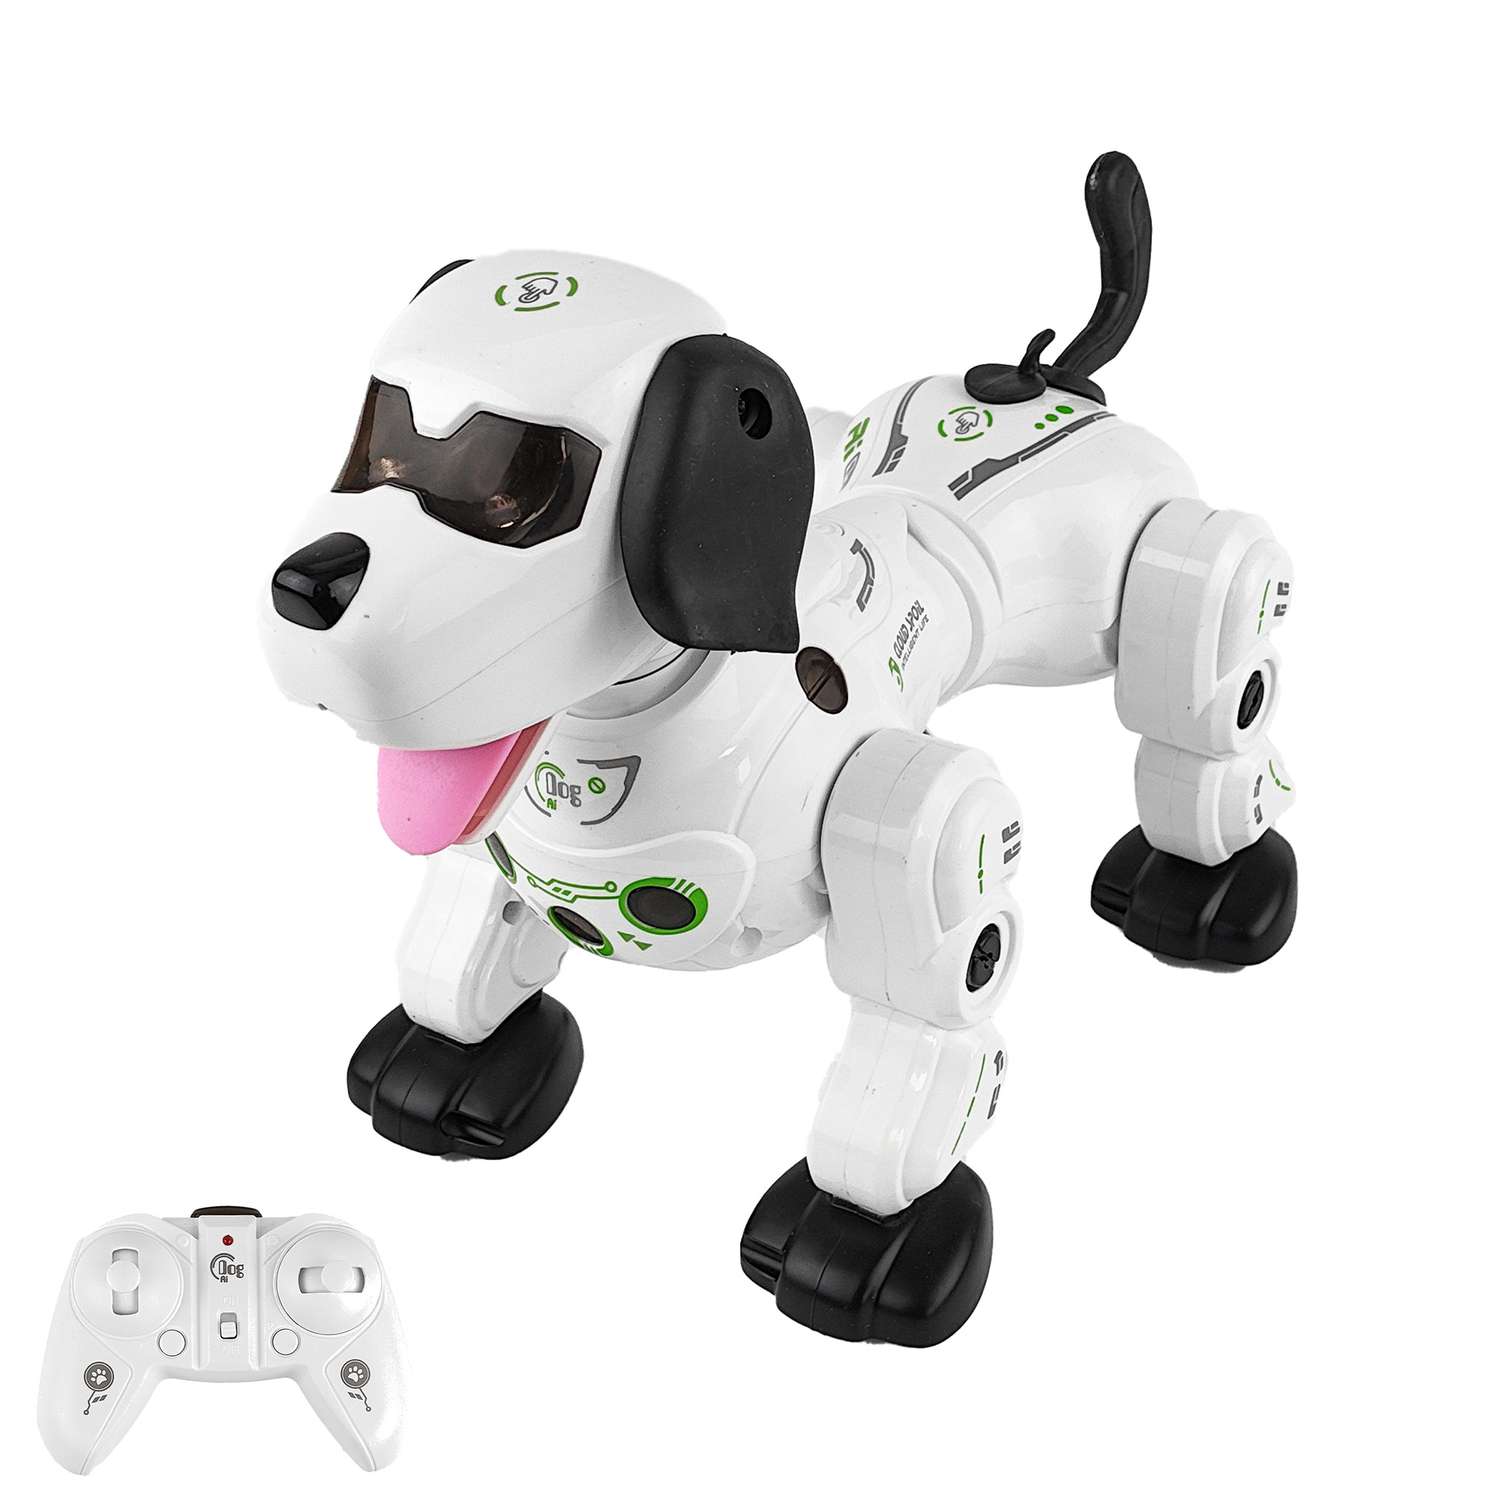 Интерактивная радиоуправляемая Happy Cow собака робот - фото 1